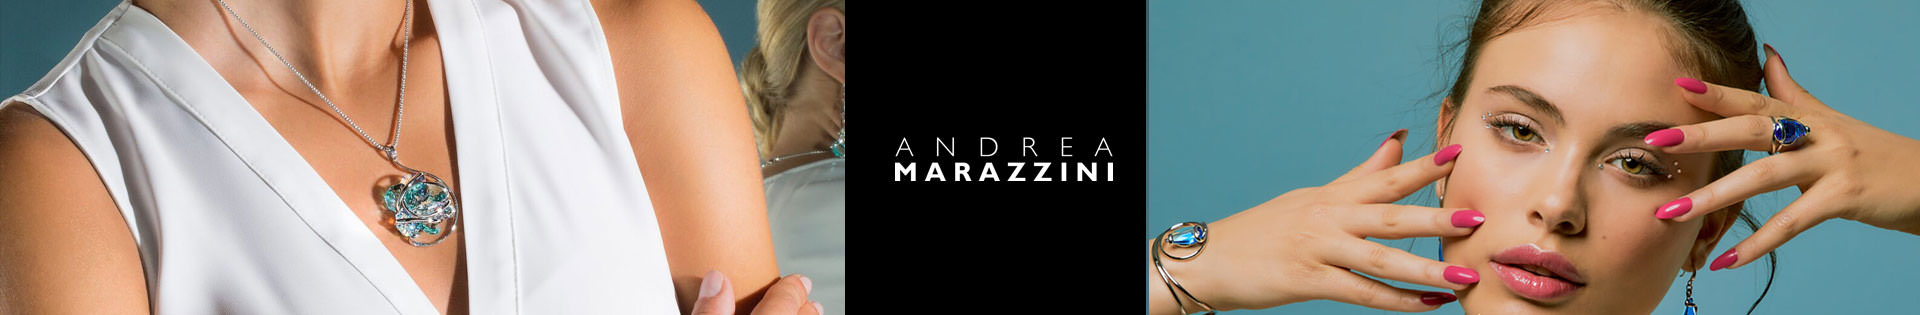 Pendentif - Andrea Marazzini